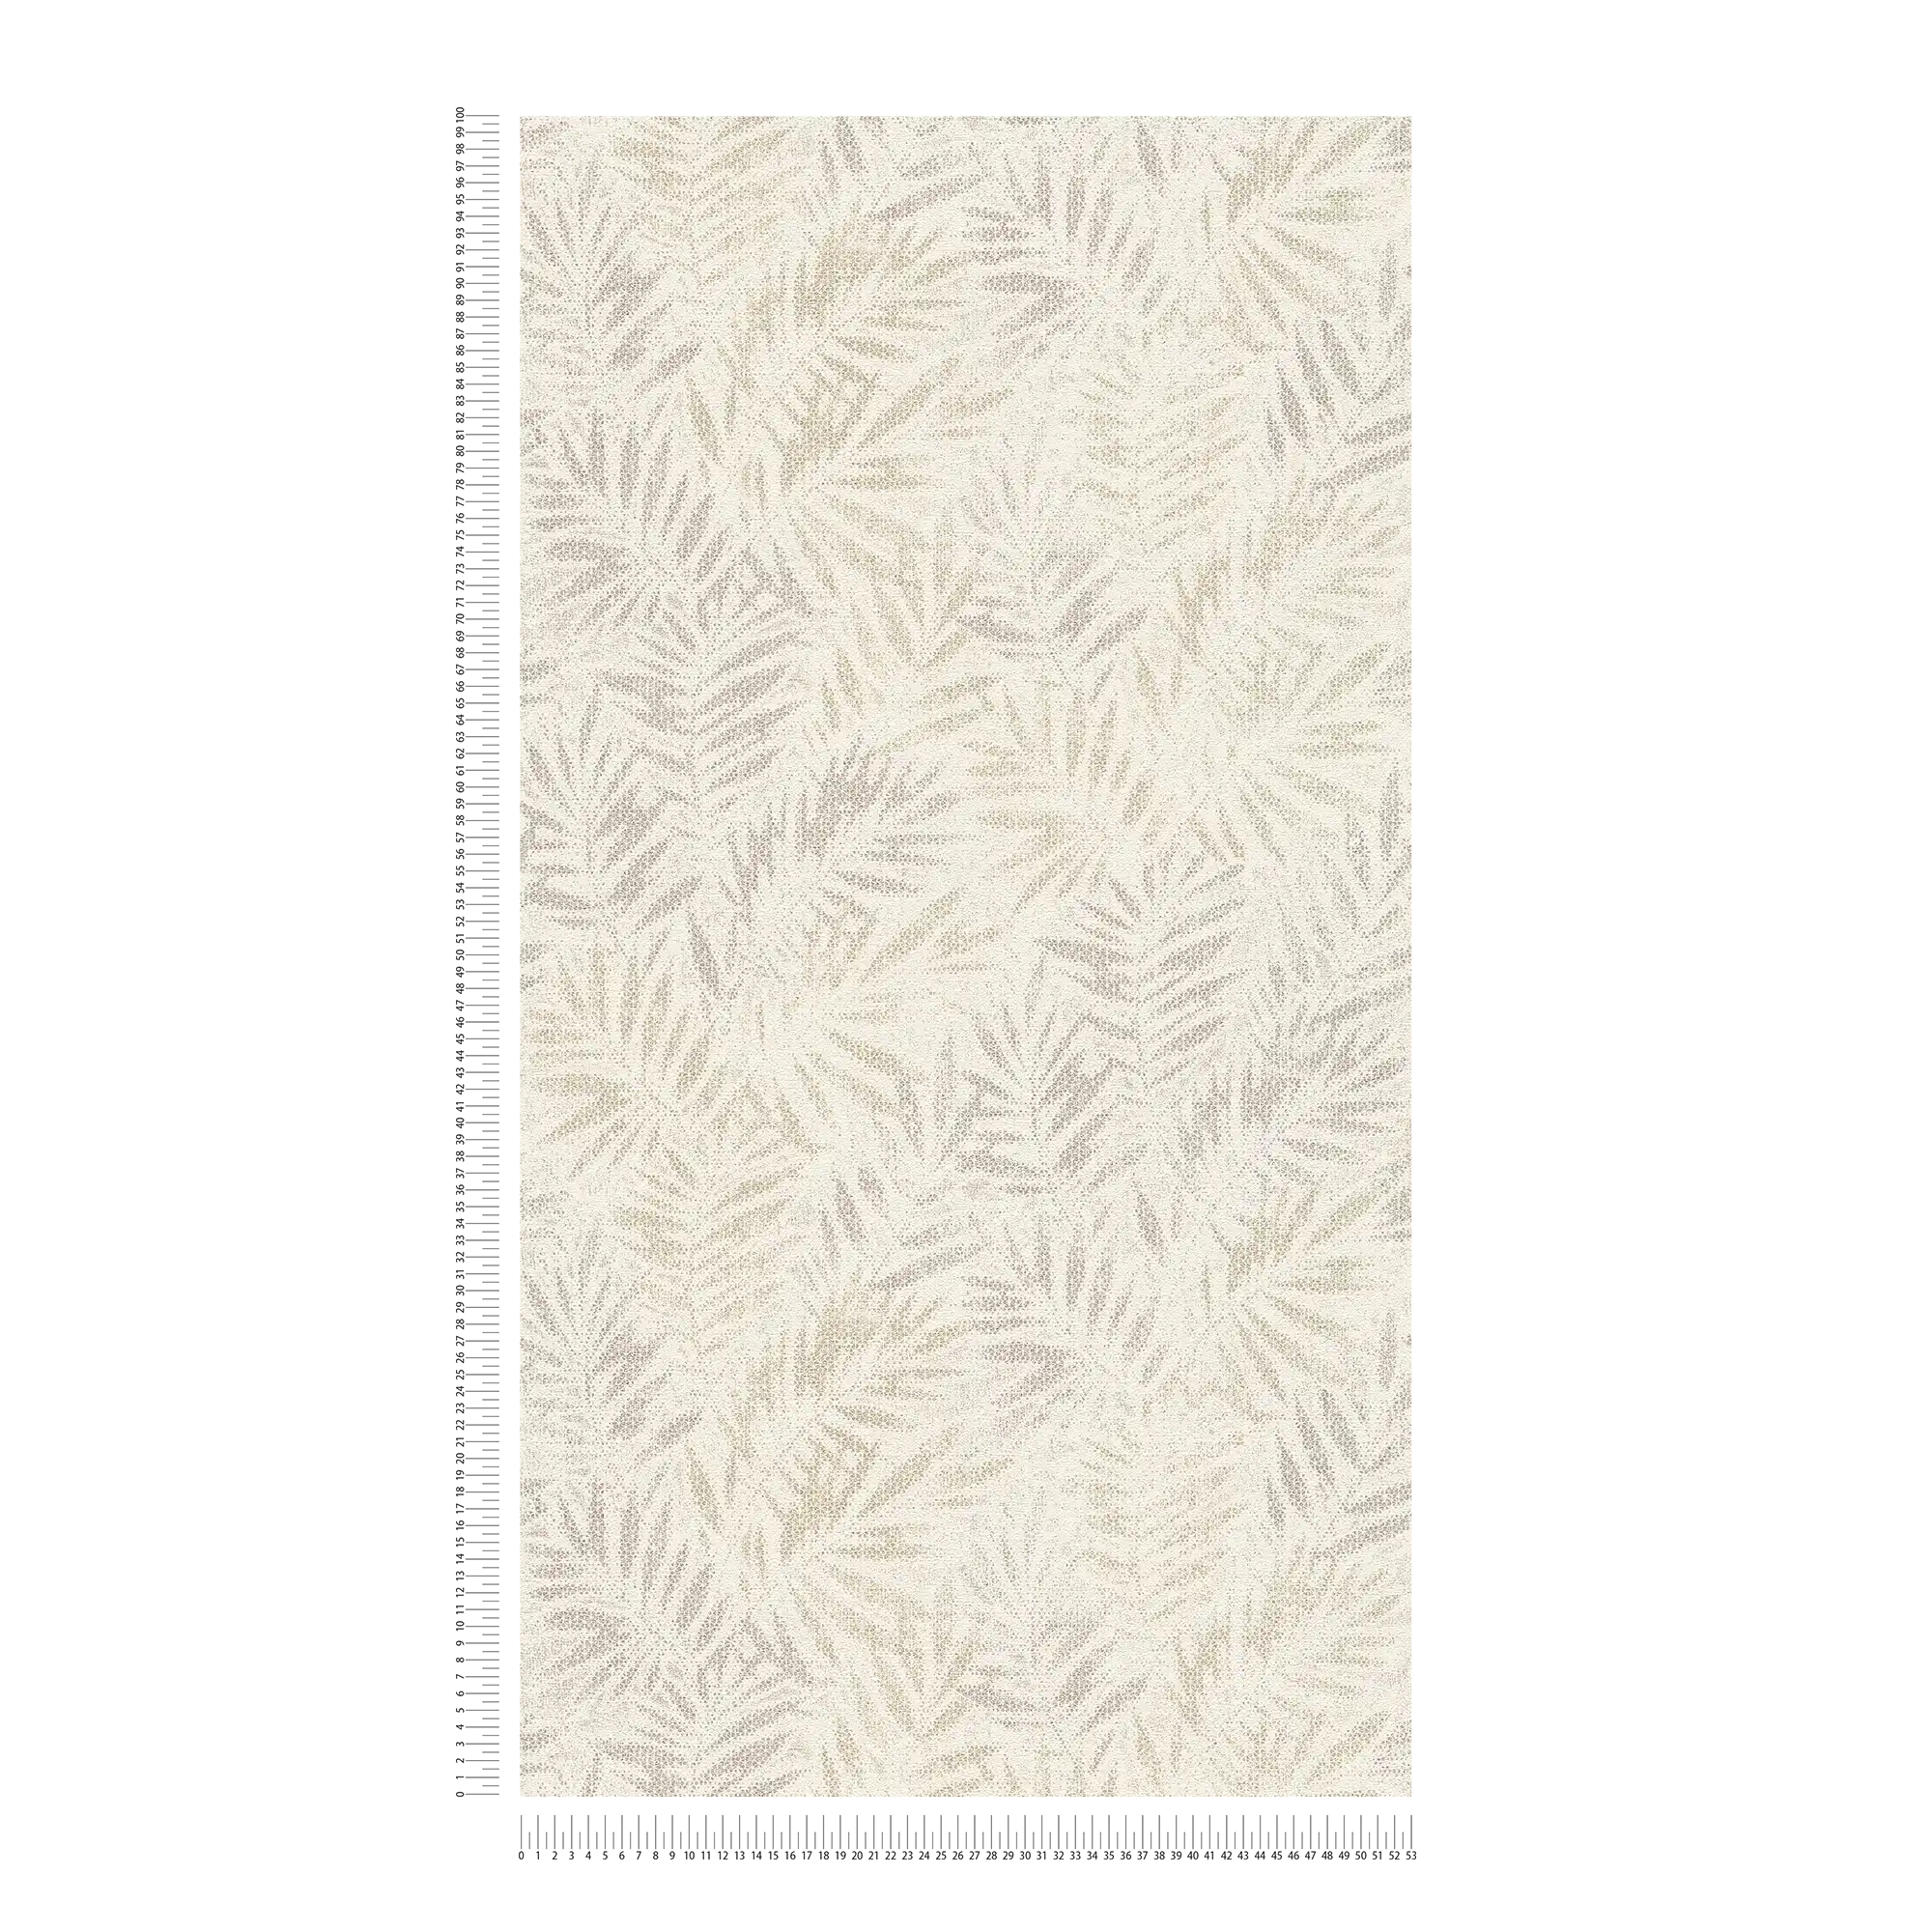             Papier peint intissé avec motif de feuilles brillantes - blanc, gris, argenté
        